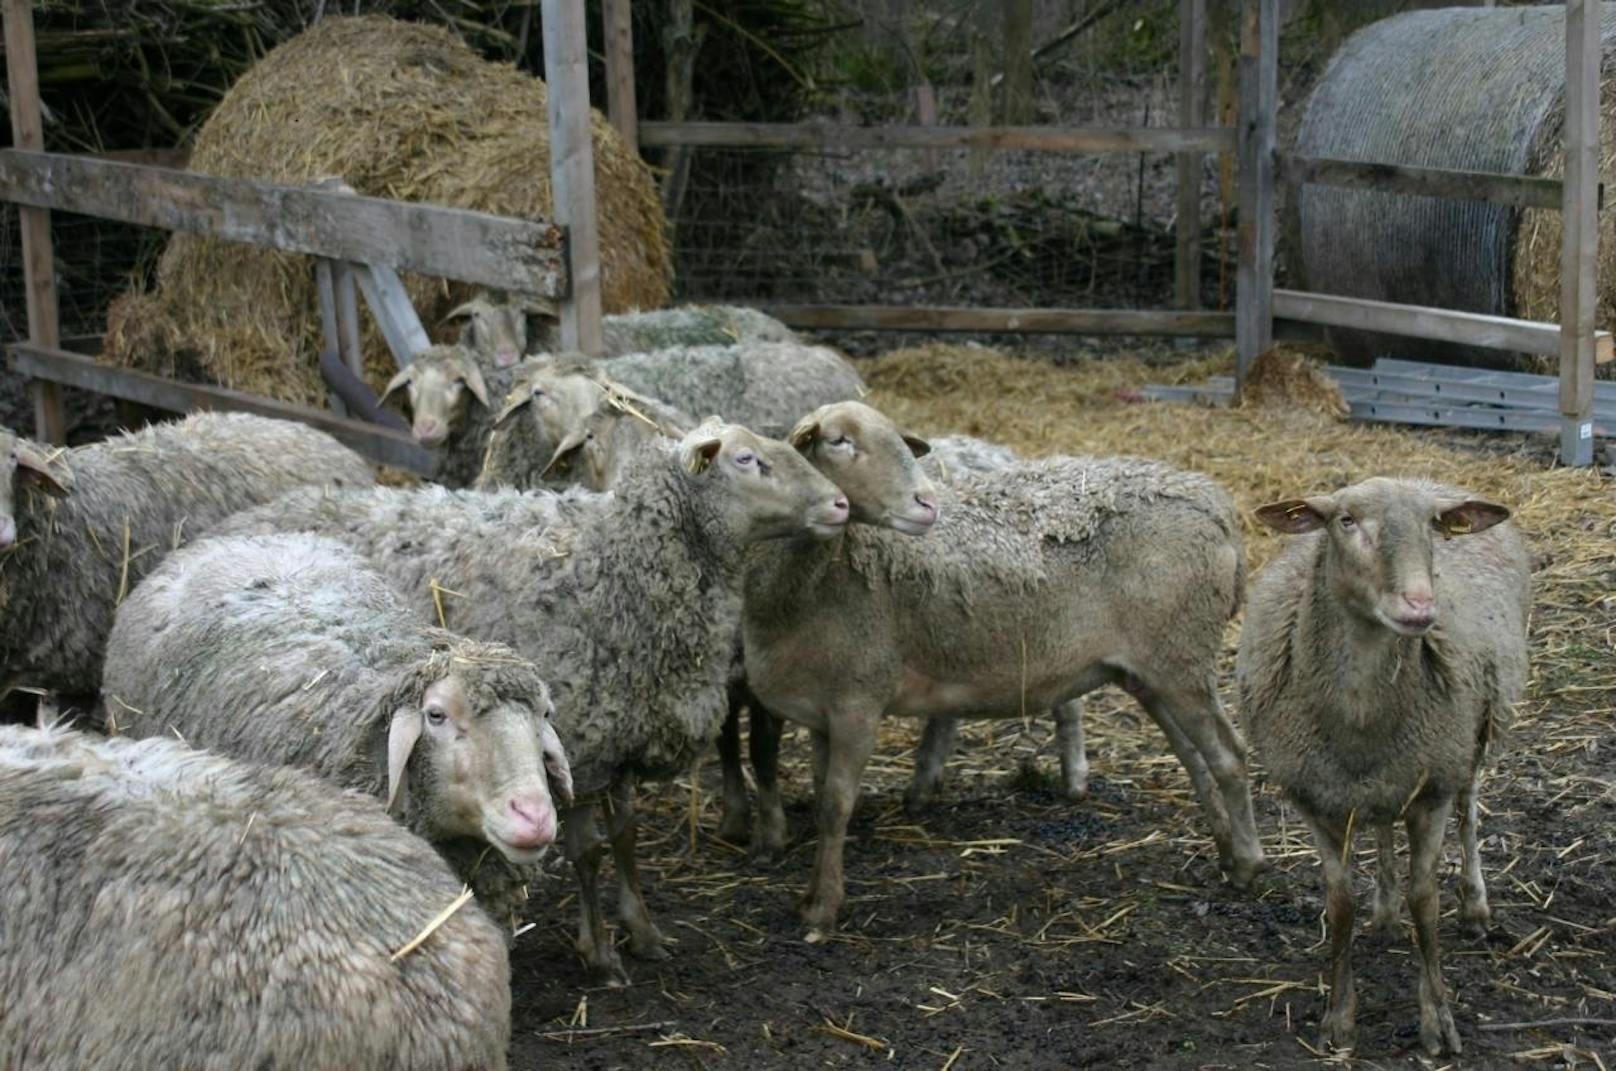 Viele der Schafe verlieren ihr Fell.